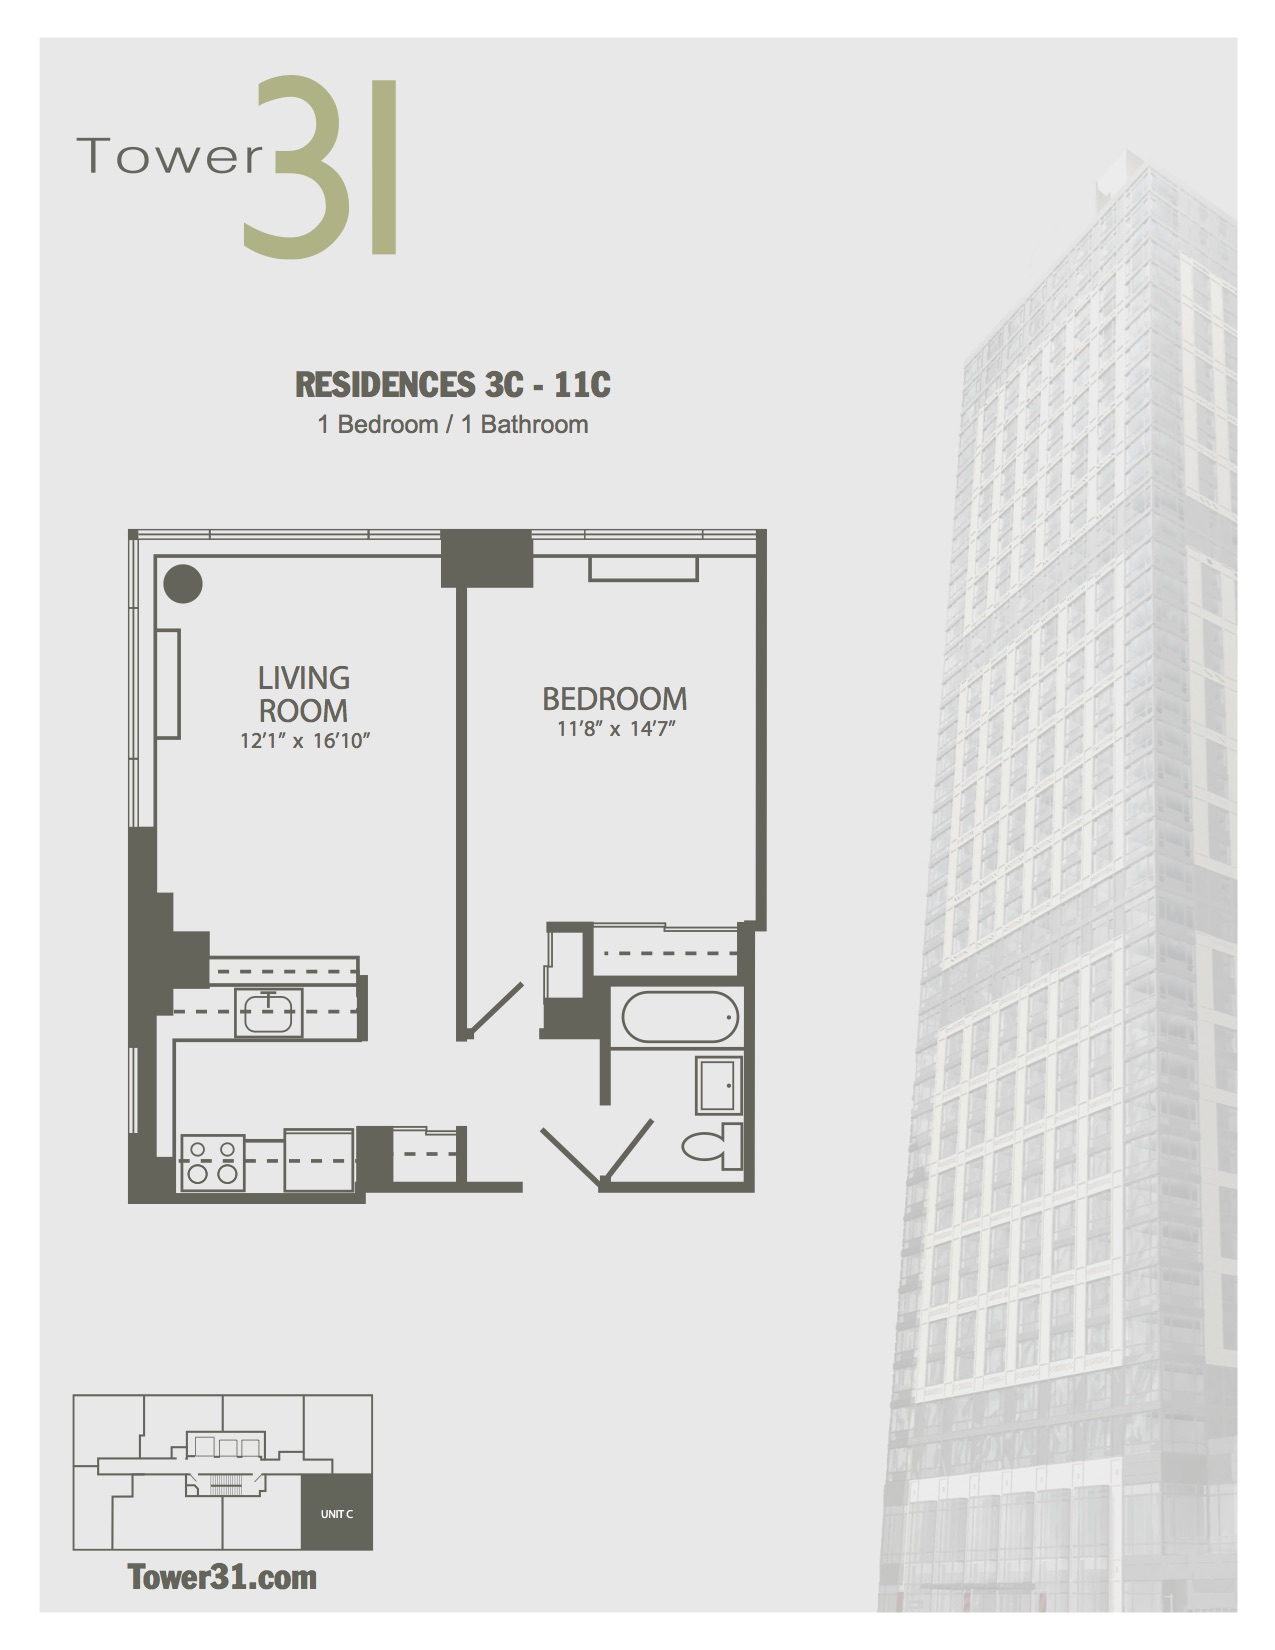 Residence C Floors 3-11